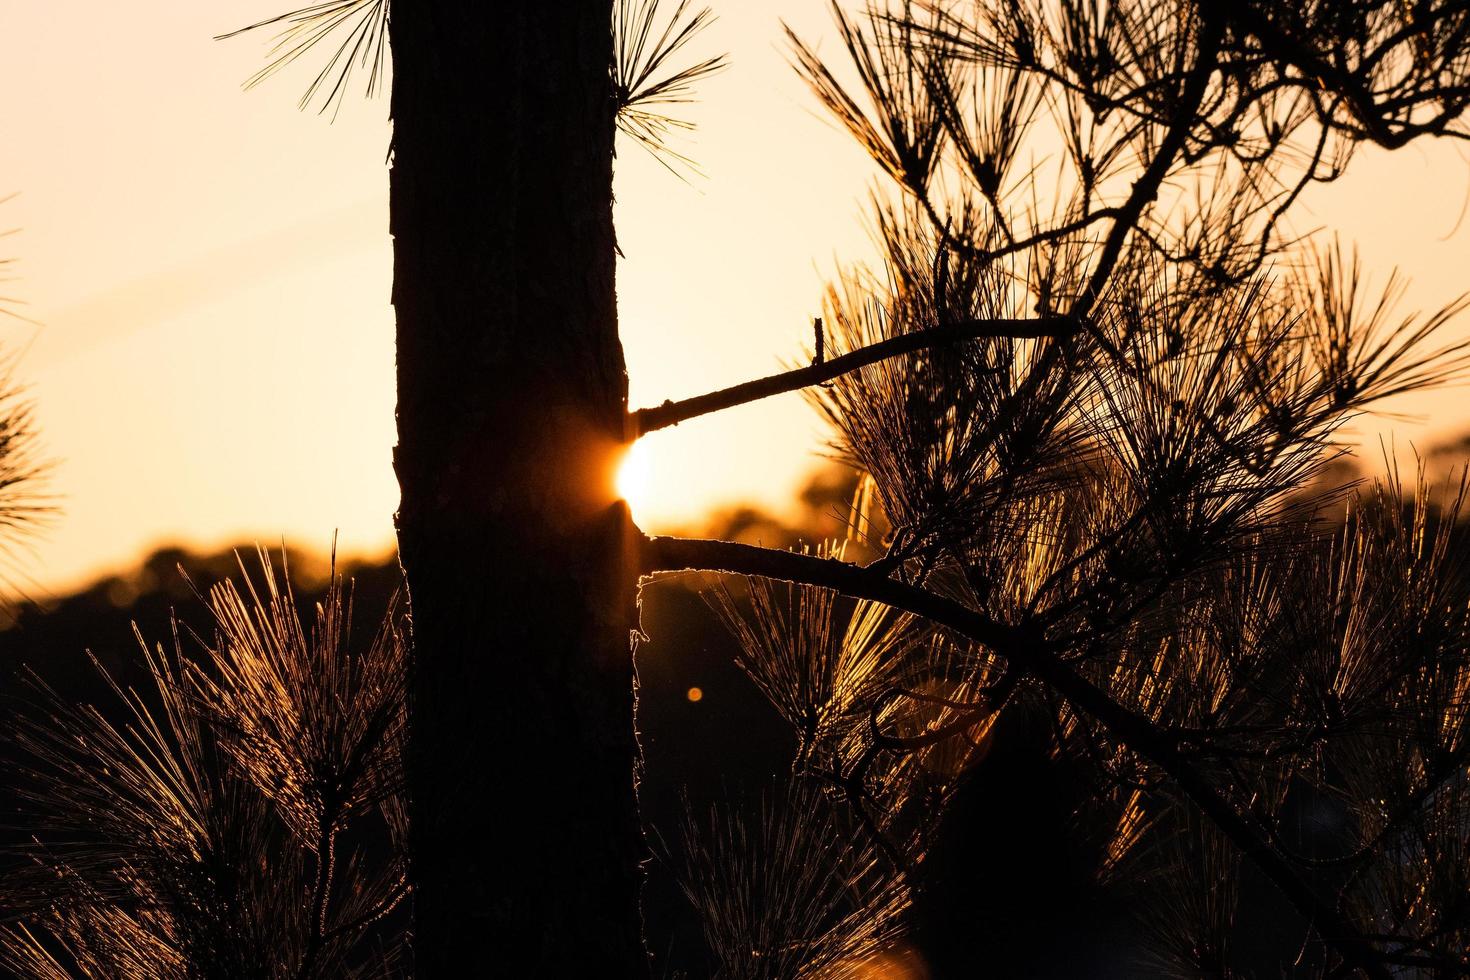 silhueta de uma árvore ao pôr do sol foto